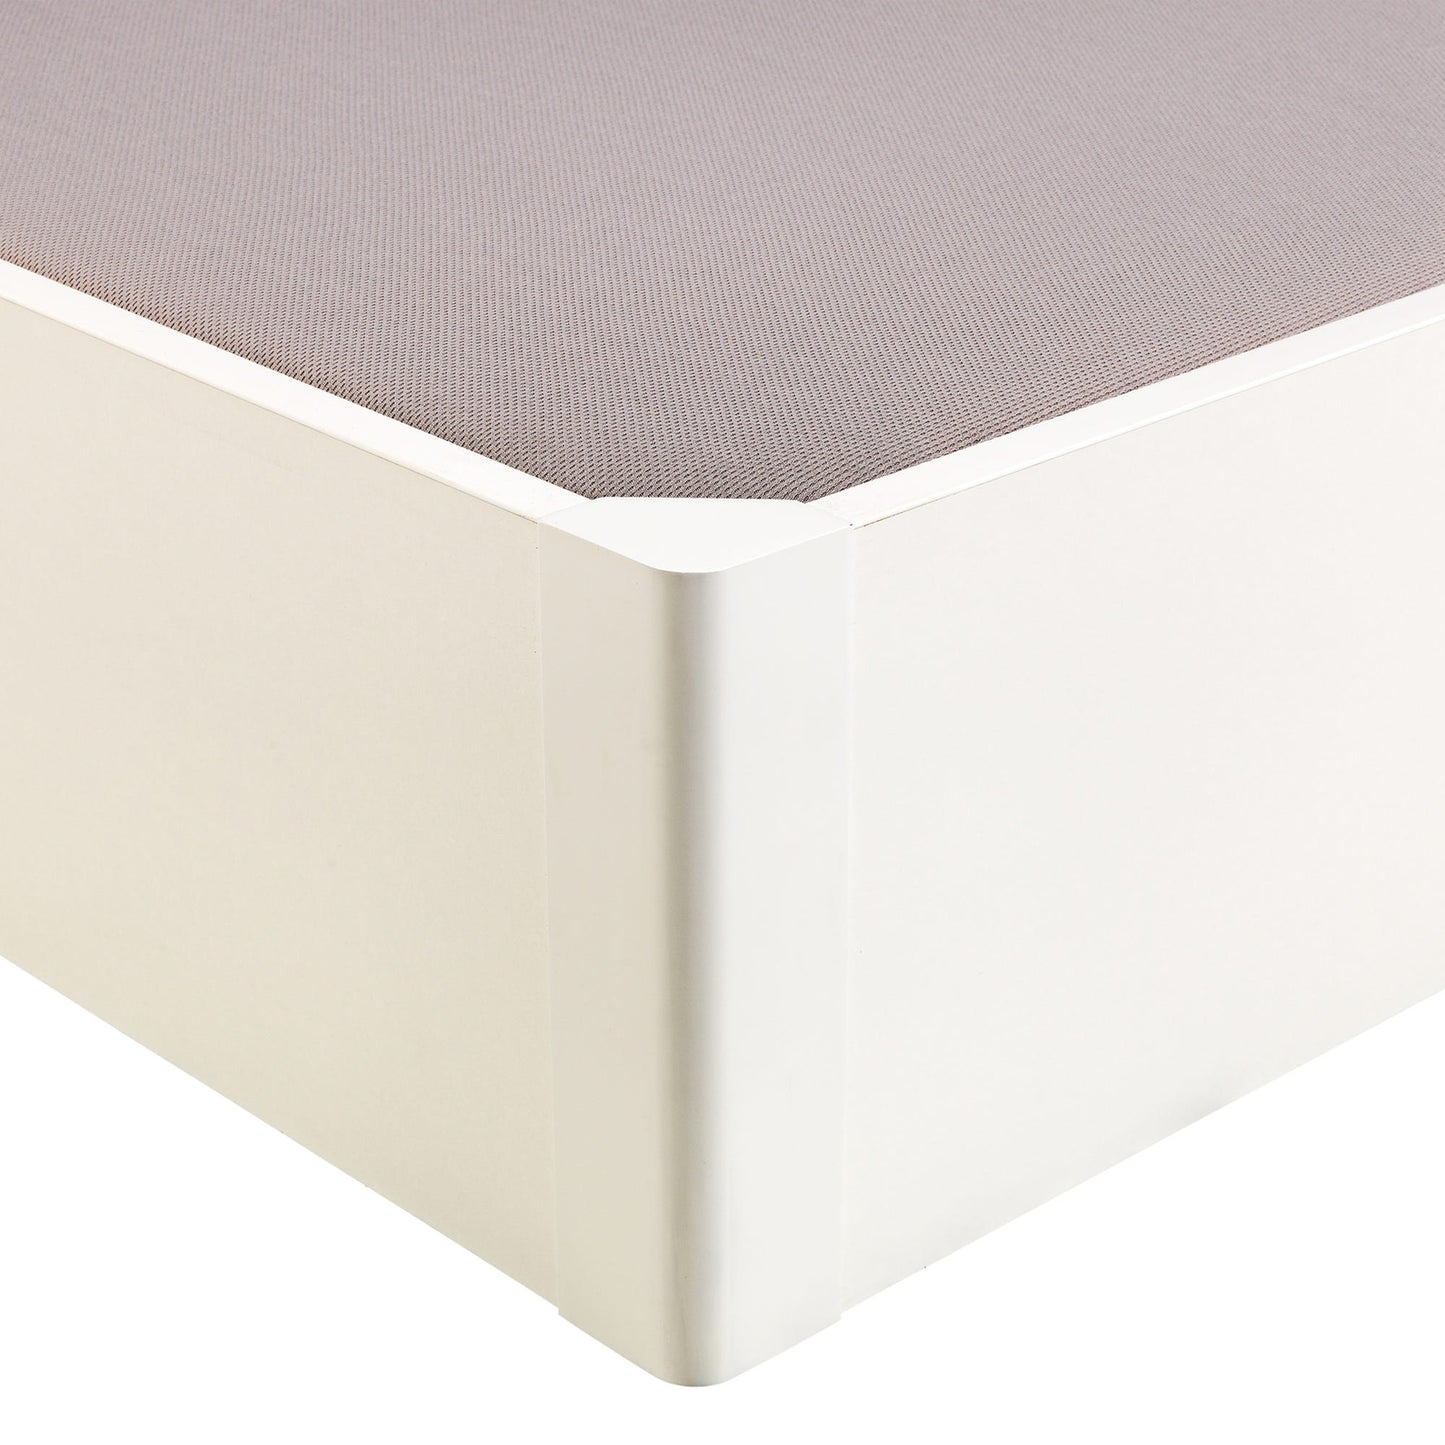 Canapé abatible de madera tapa única de color blanco - DESIGN - 80x182